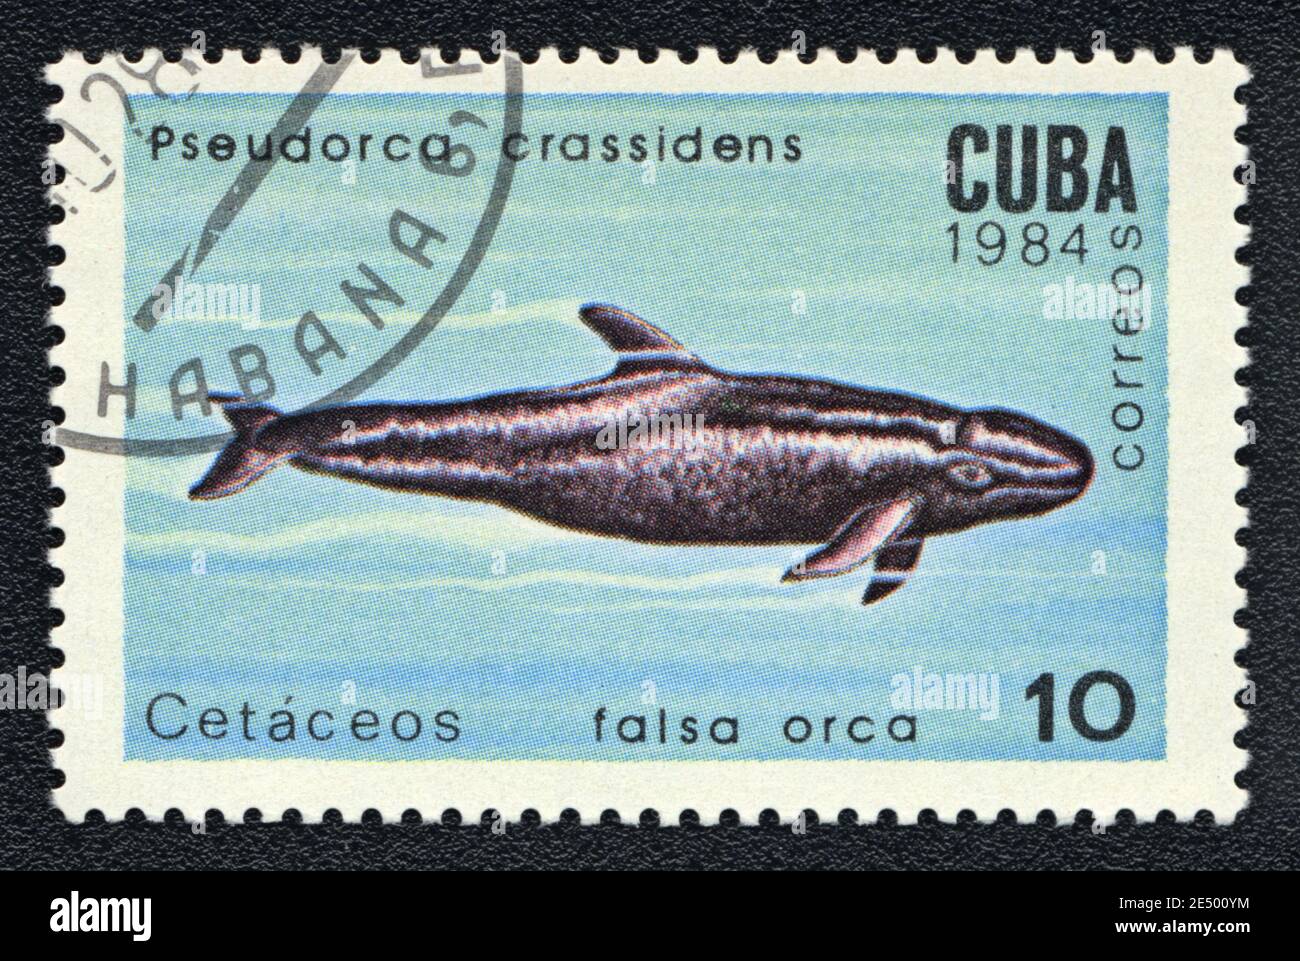 Il francobollo stampato a Cuba mostra un crassidens Pseudorca, serie 'SeaMammals', circa 1984 Foto Stock